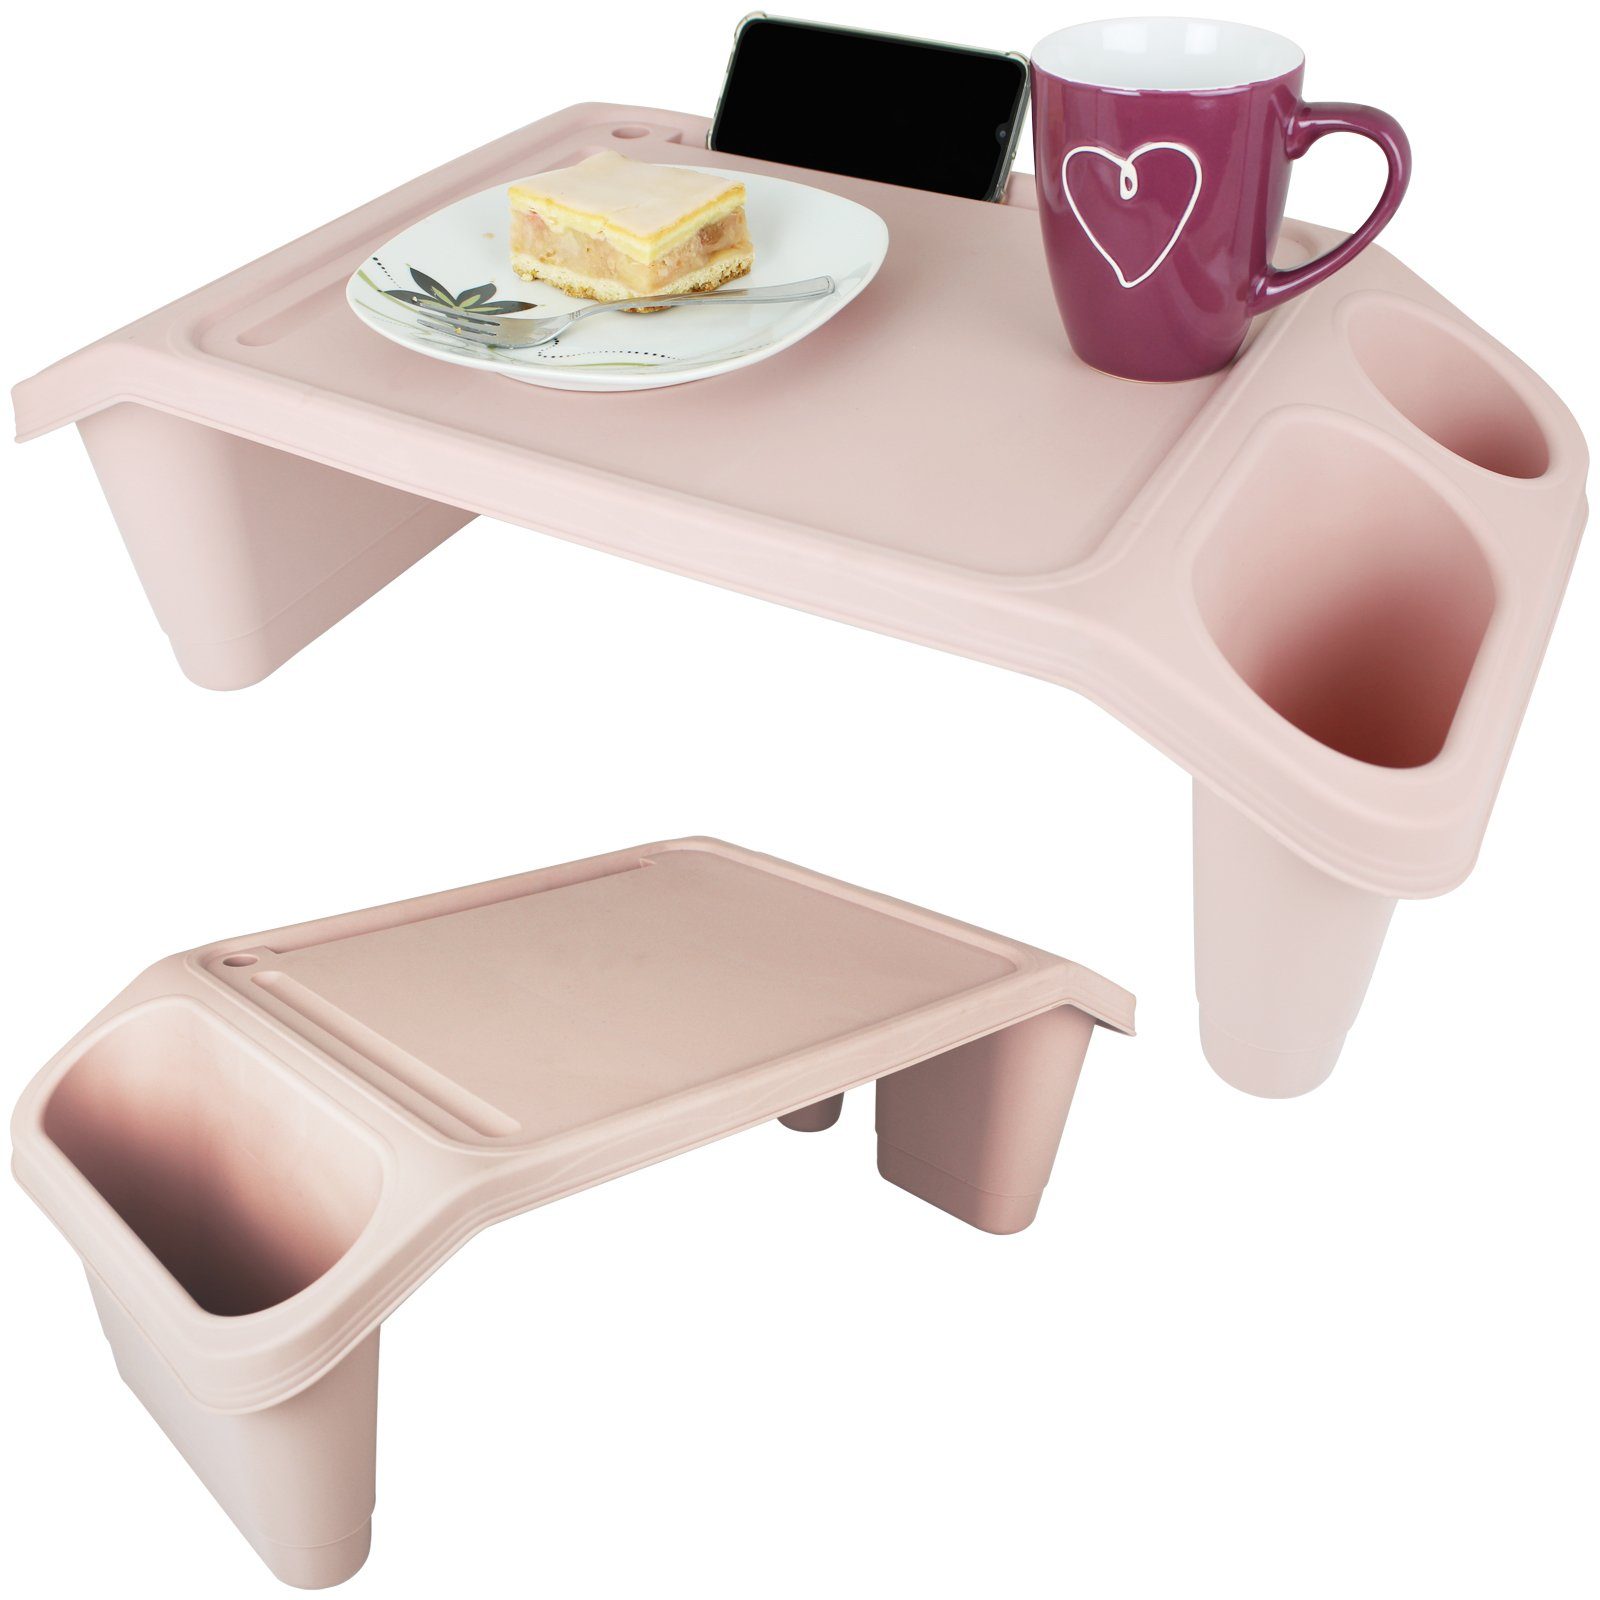 Koopman Tabletttisch Bett-Serviertablett Farbwahl Tablett Bett Tisch Serviertisch, Beistelltisch Couchtablett Betttisch Früchstück Frühstückstablett Rosa